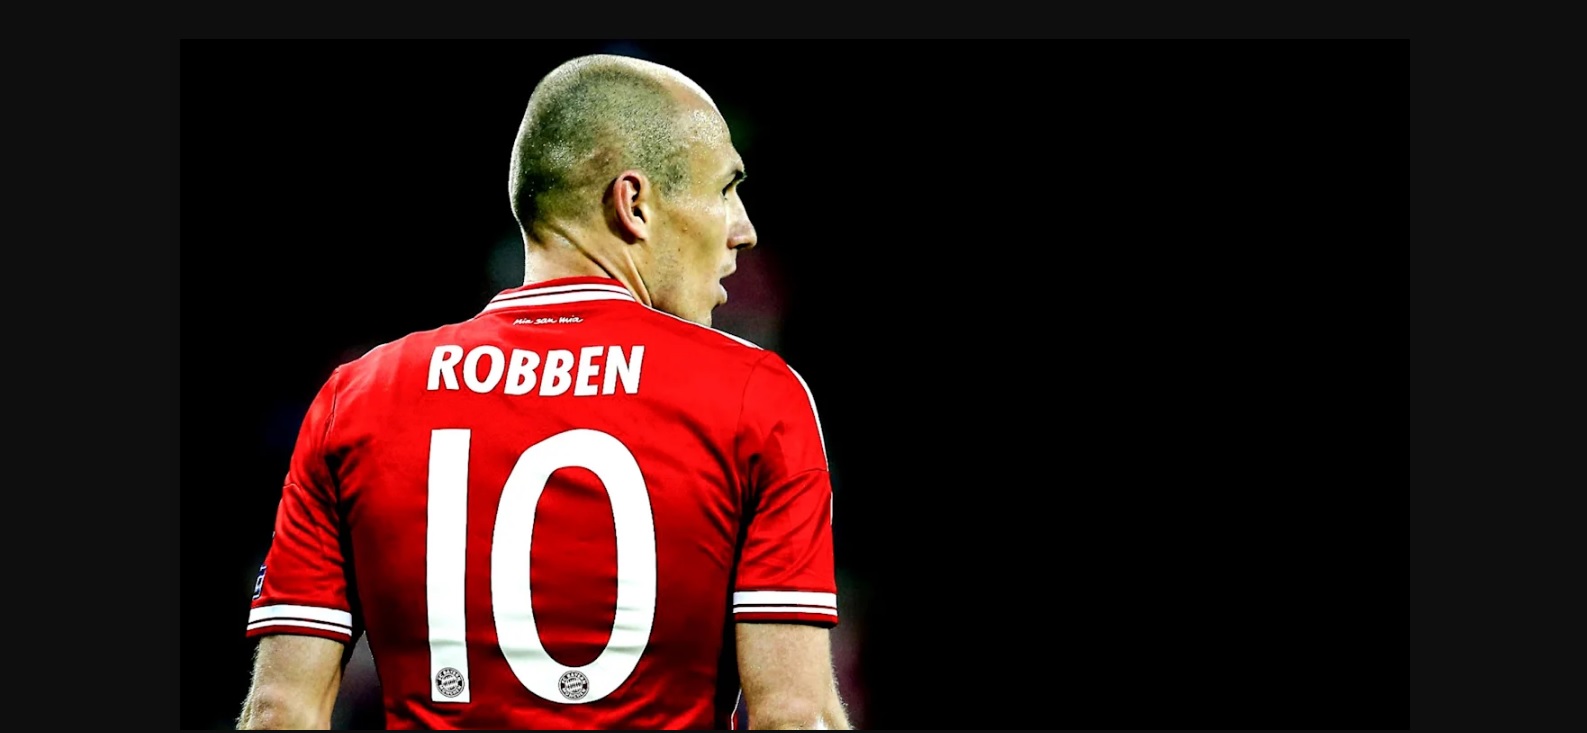 Oficial: Arjen Robben se retira del fútbol activo después de 19 años